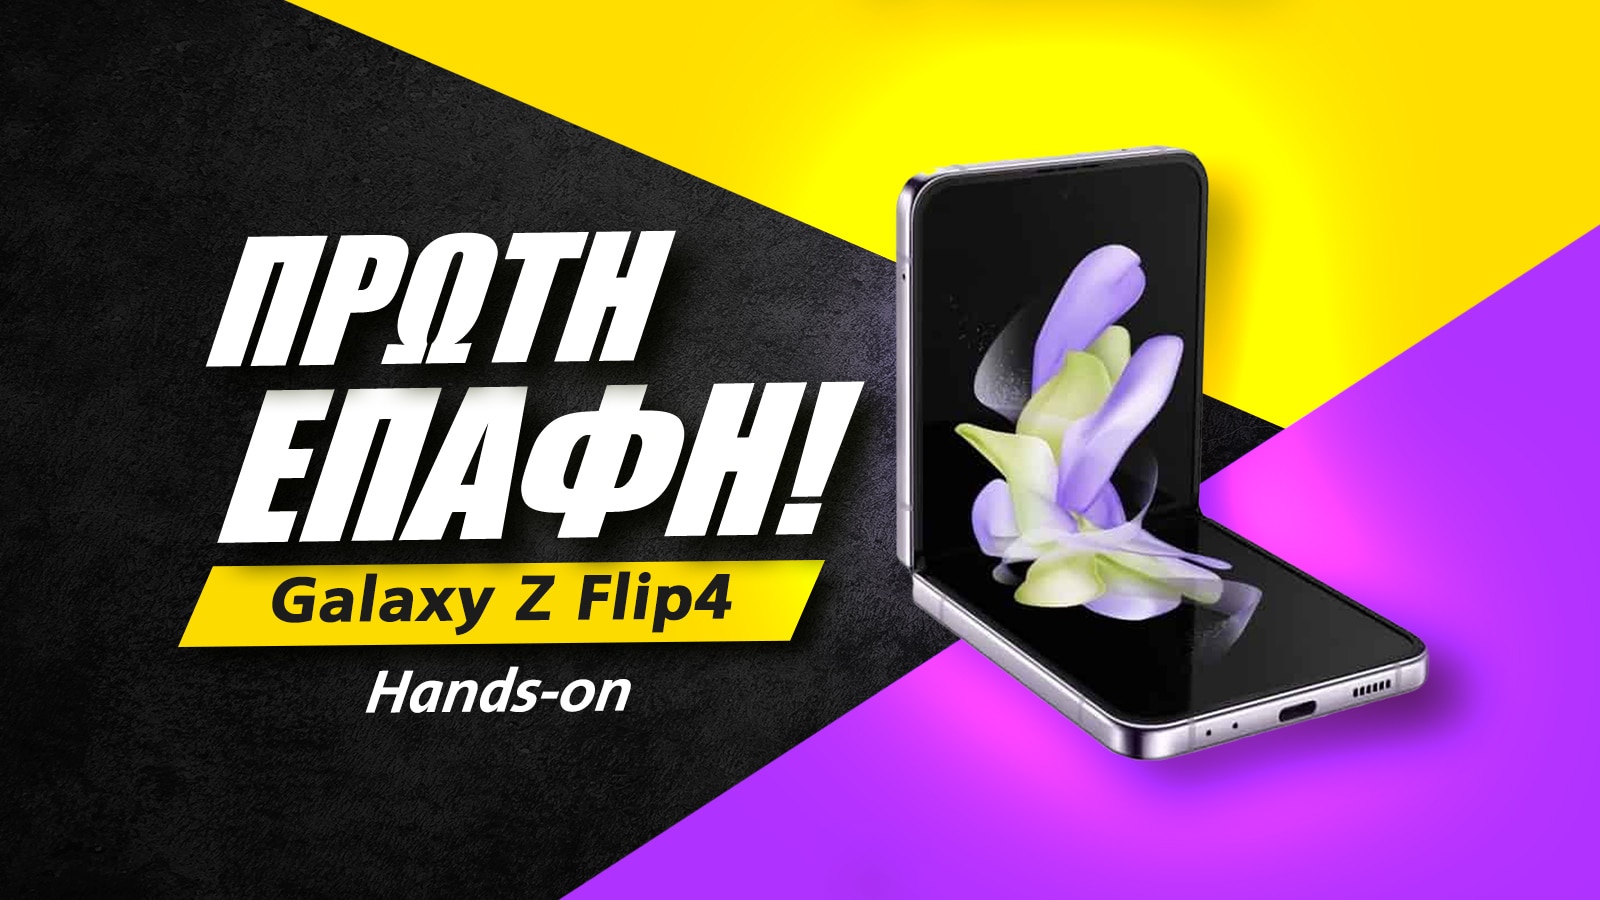 Galaxy Z Flip4 Greek, Samsung Galaxy Z Flip4 πρώτη επαφή, ελληνικό hands-on video